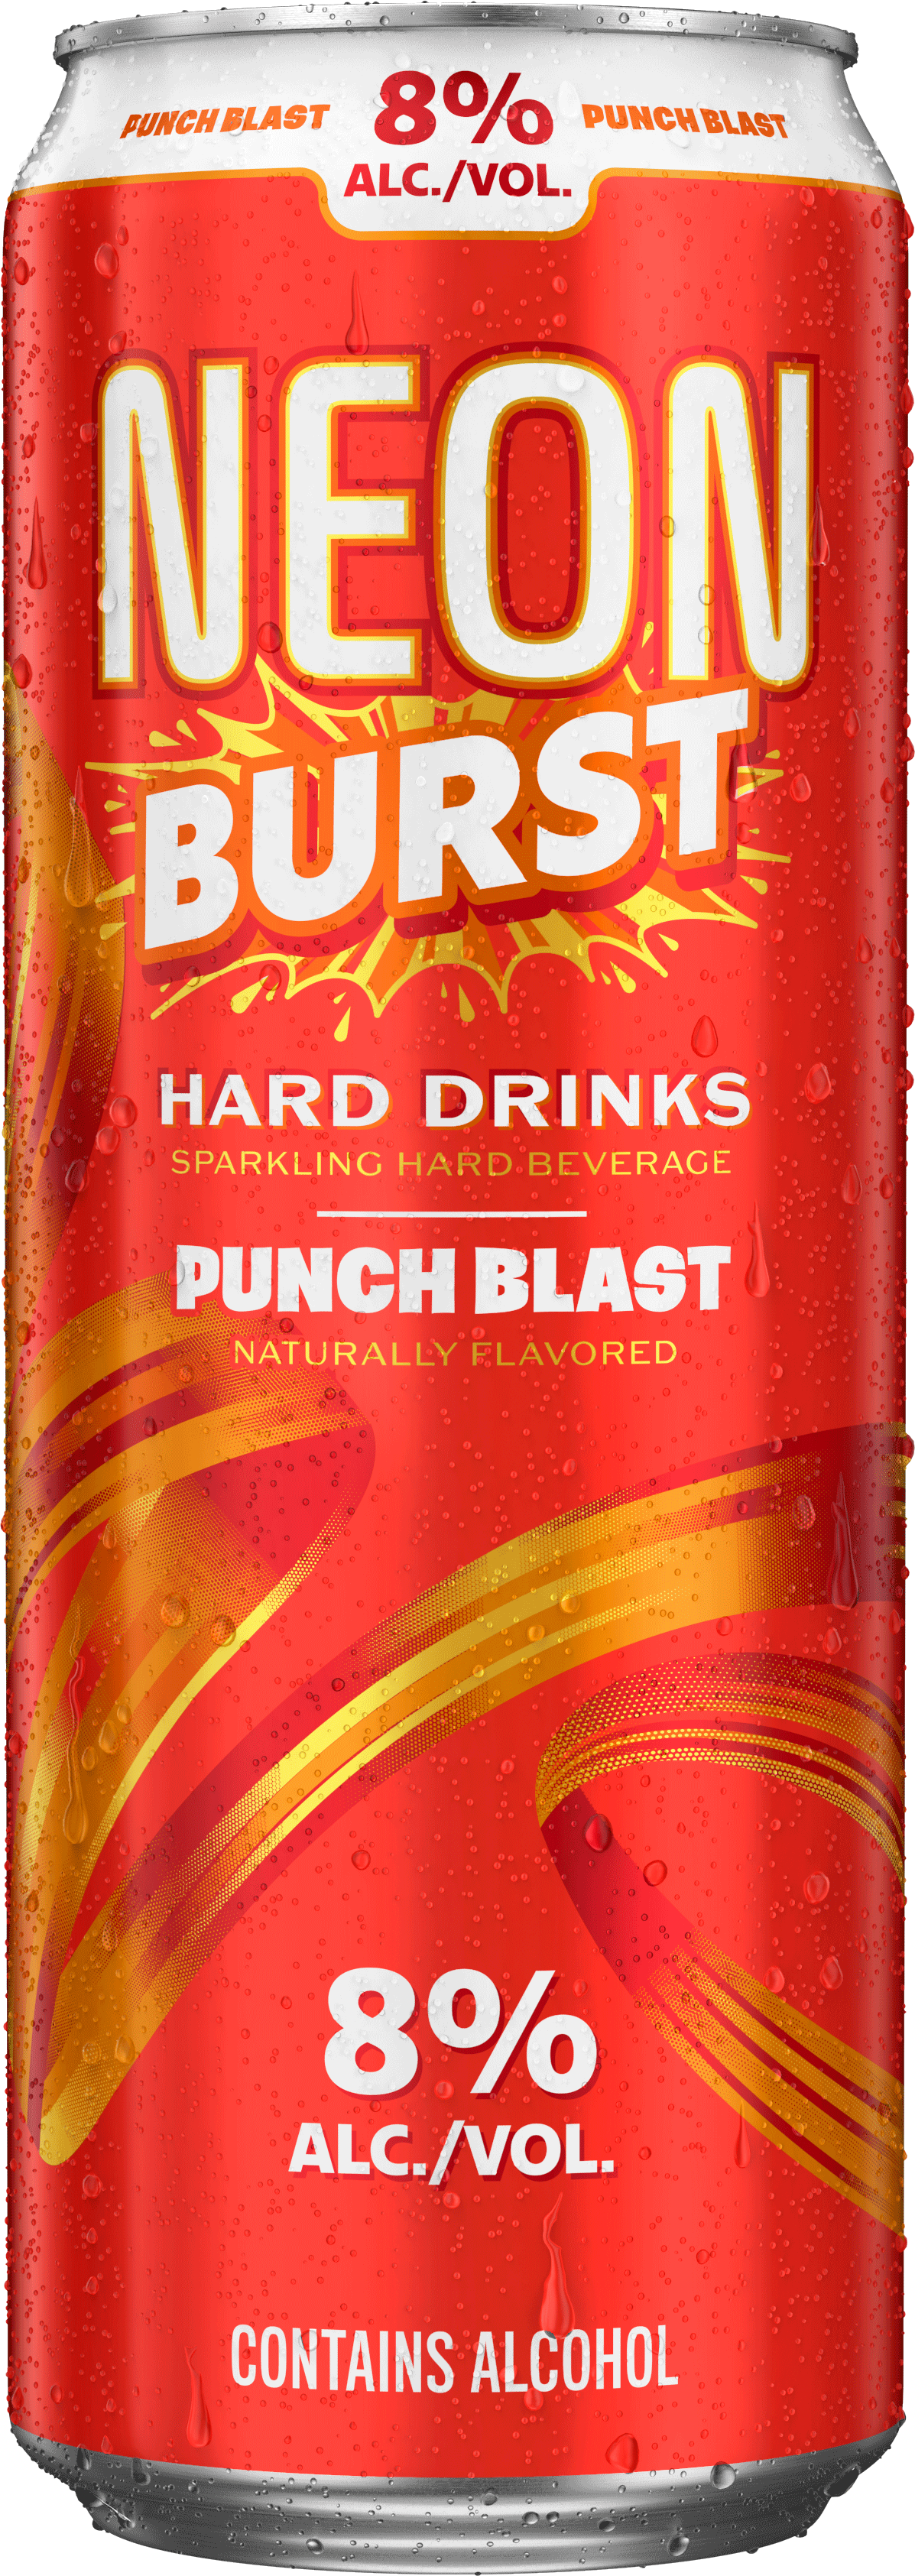 NEON BURST Punch Blast hard drink flavor. Sparkling hard beverage.